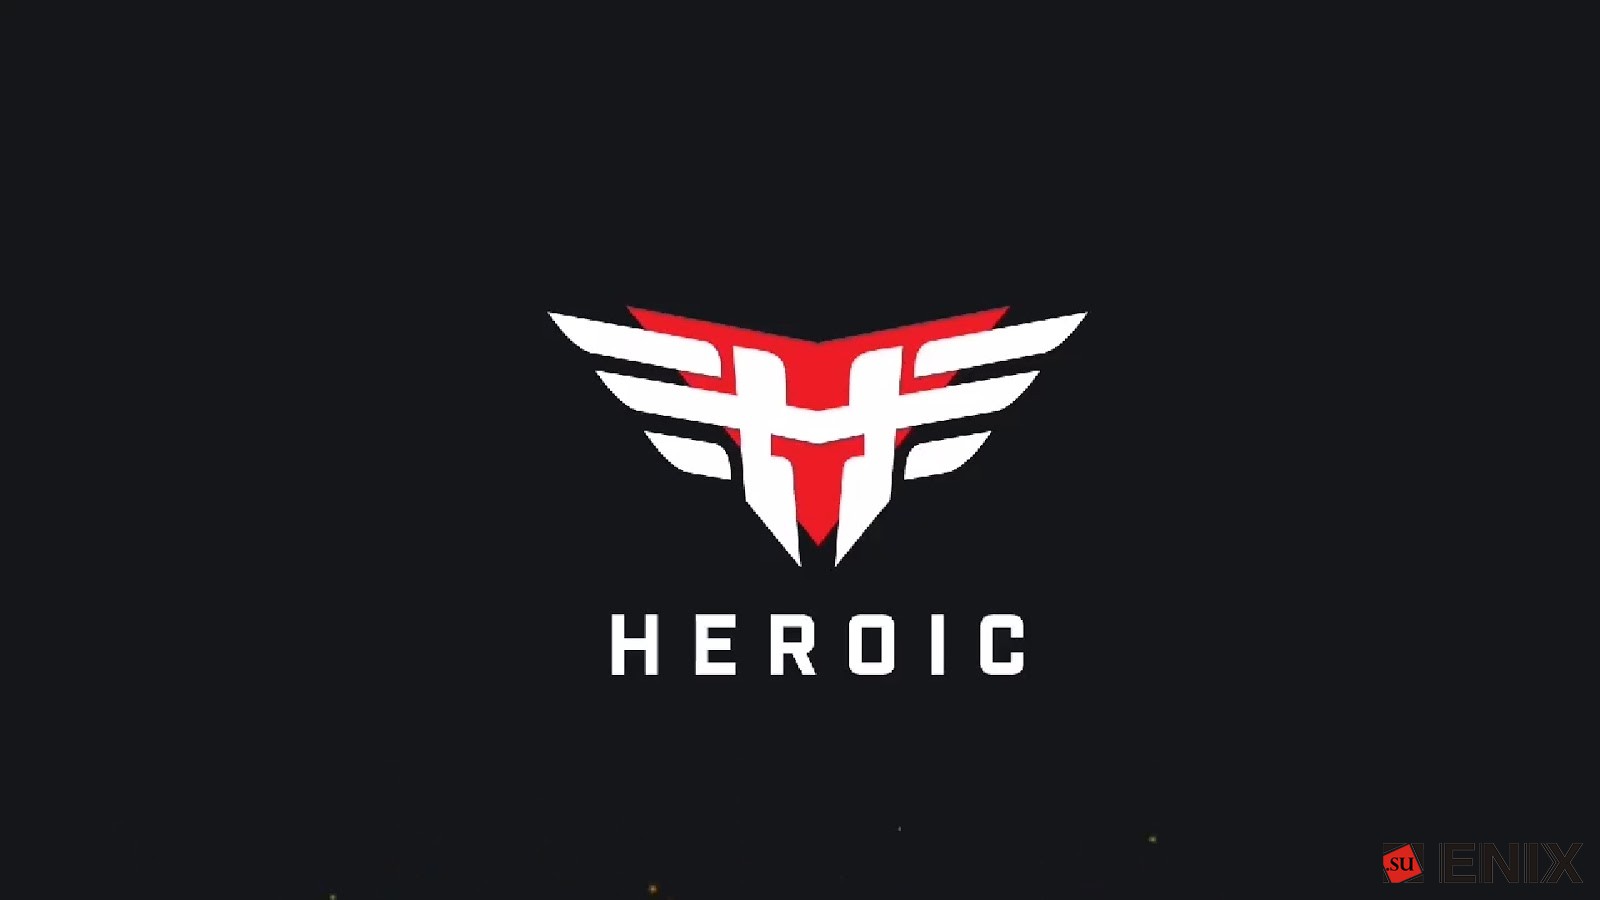 Heroic обыграла Fnatic в рамках RMR-турнира для Европы